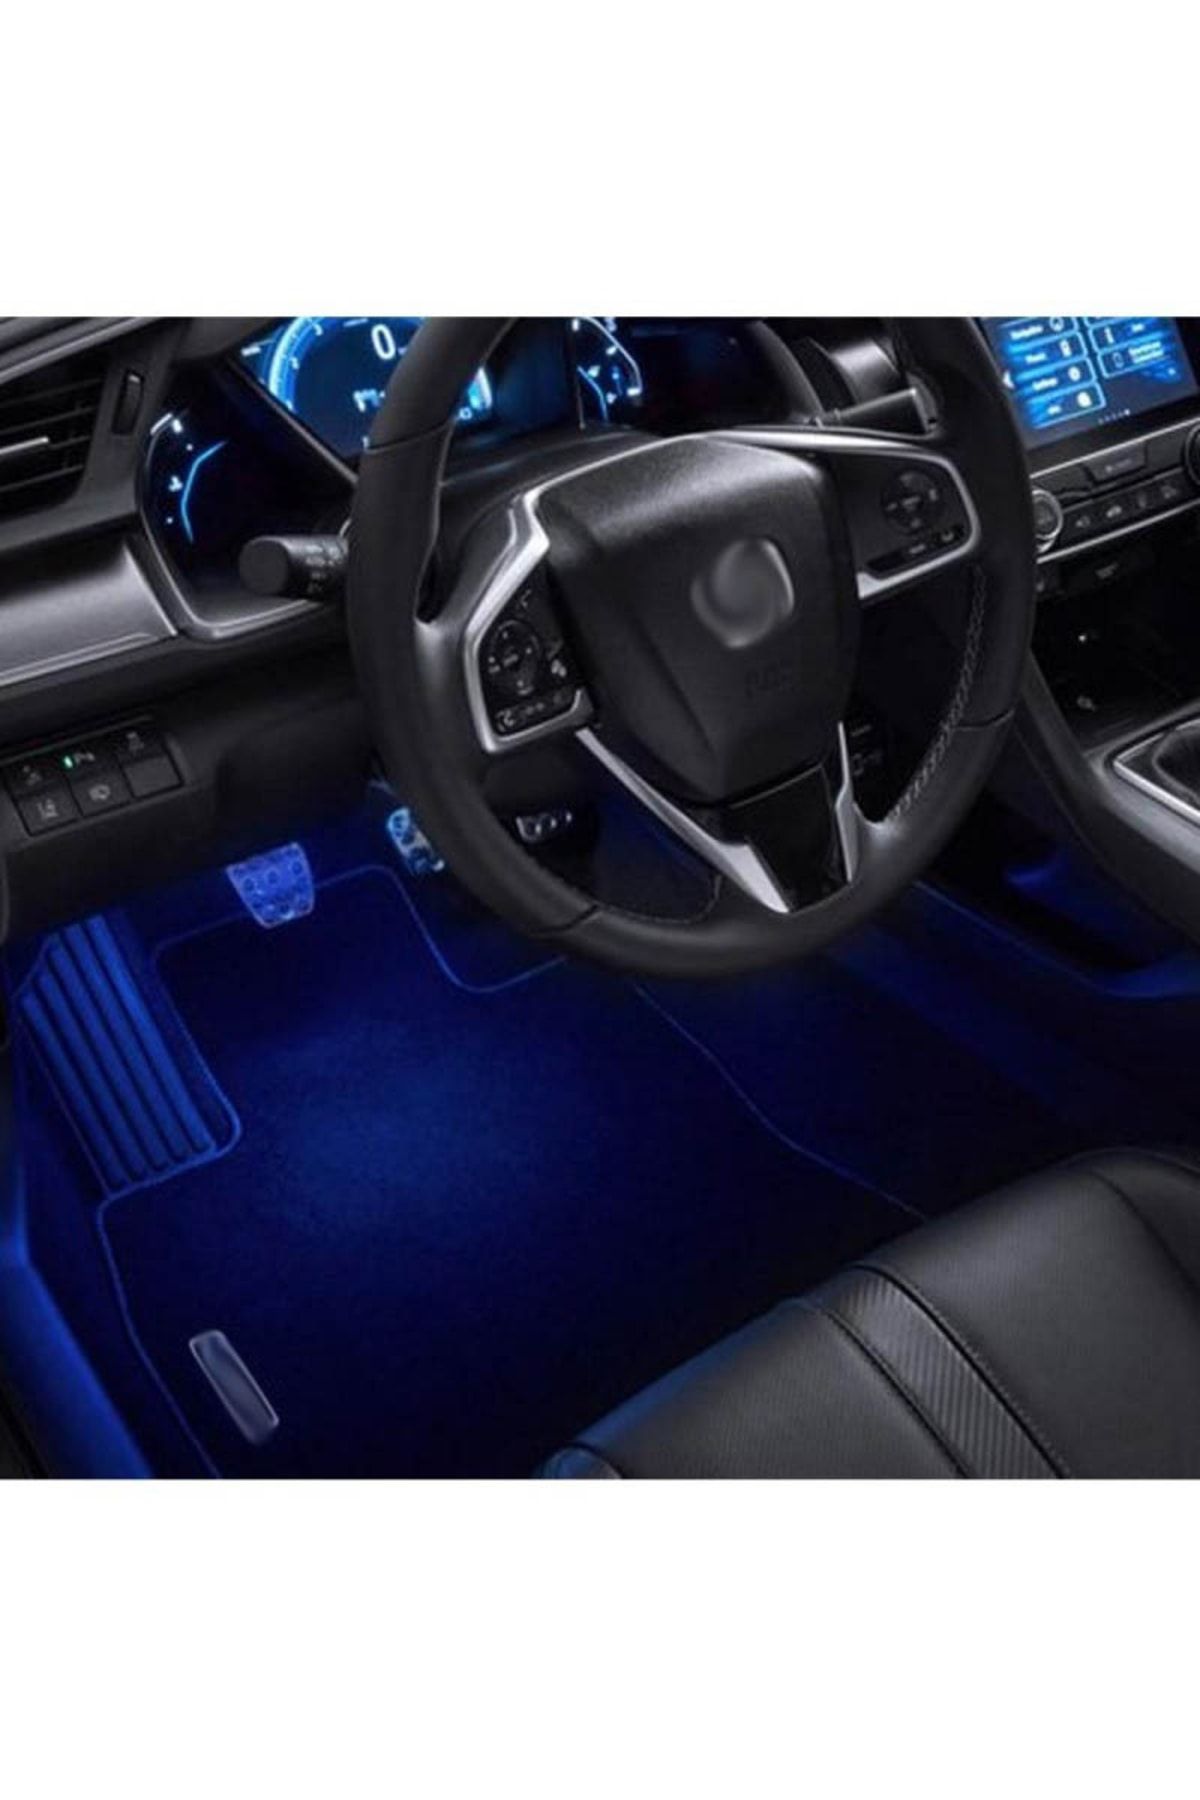 OLED GARAJ Honda Civic İçin Uyumlu FC5 Kapı İç ve Ayak Altı Aydınlatma Mavi Renk